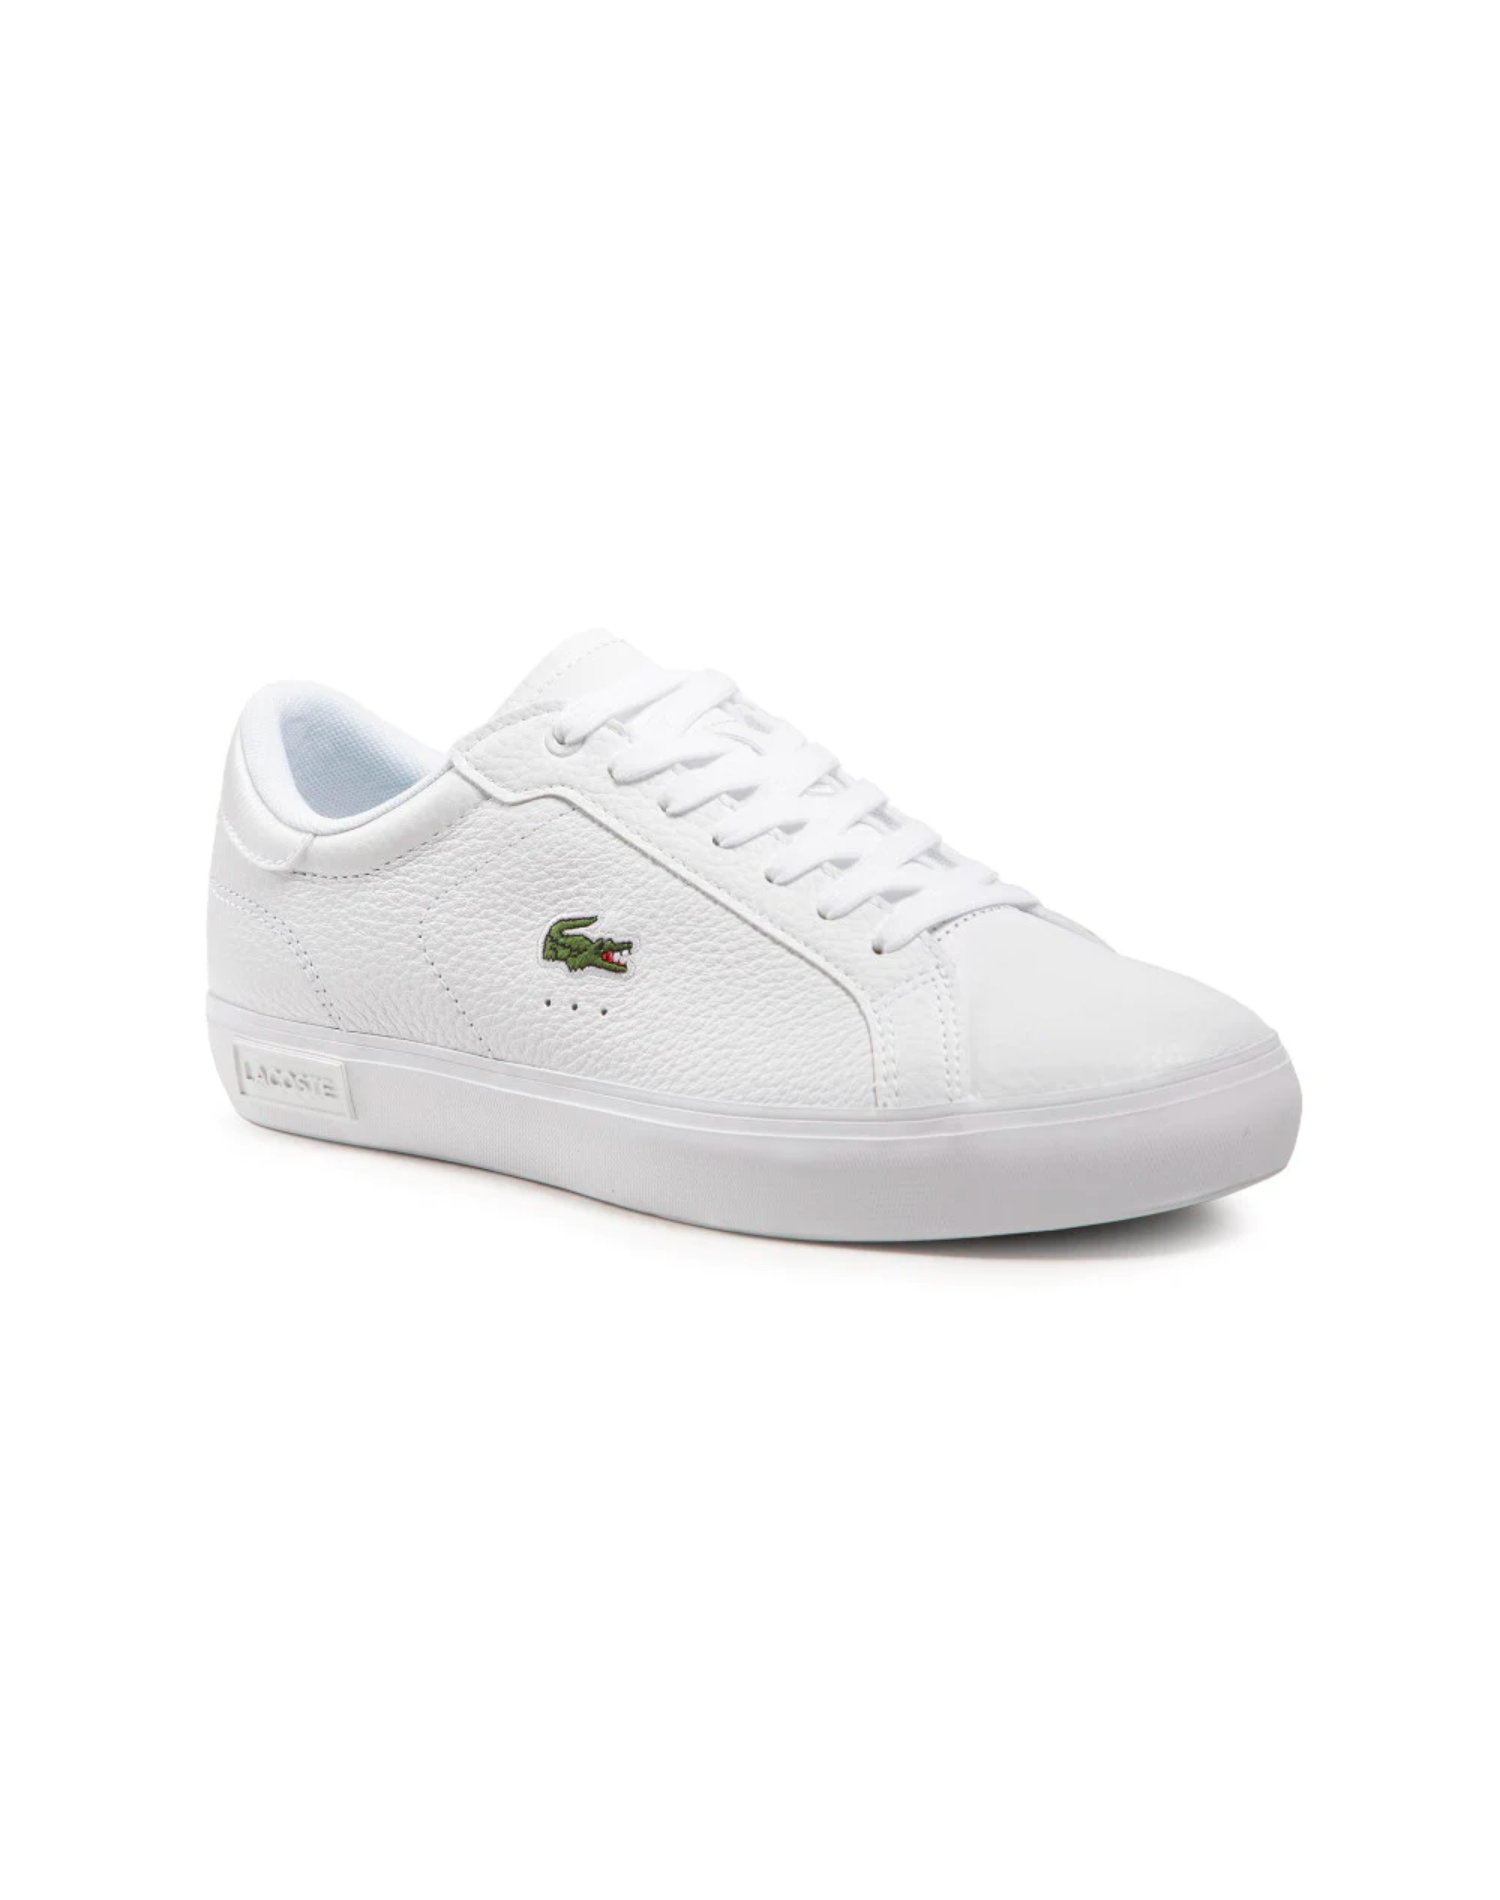 Lacoste - Powercourt 0721 2 SFA Shoe - White/White